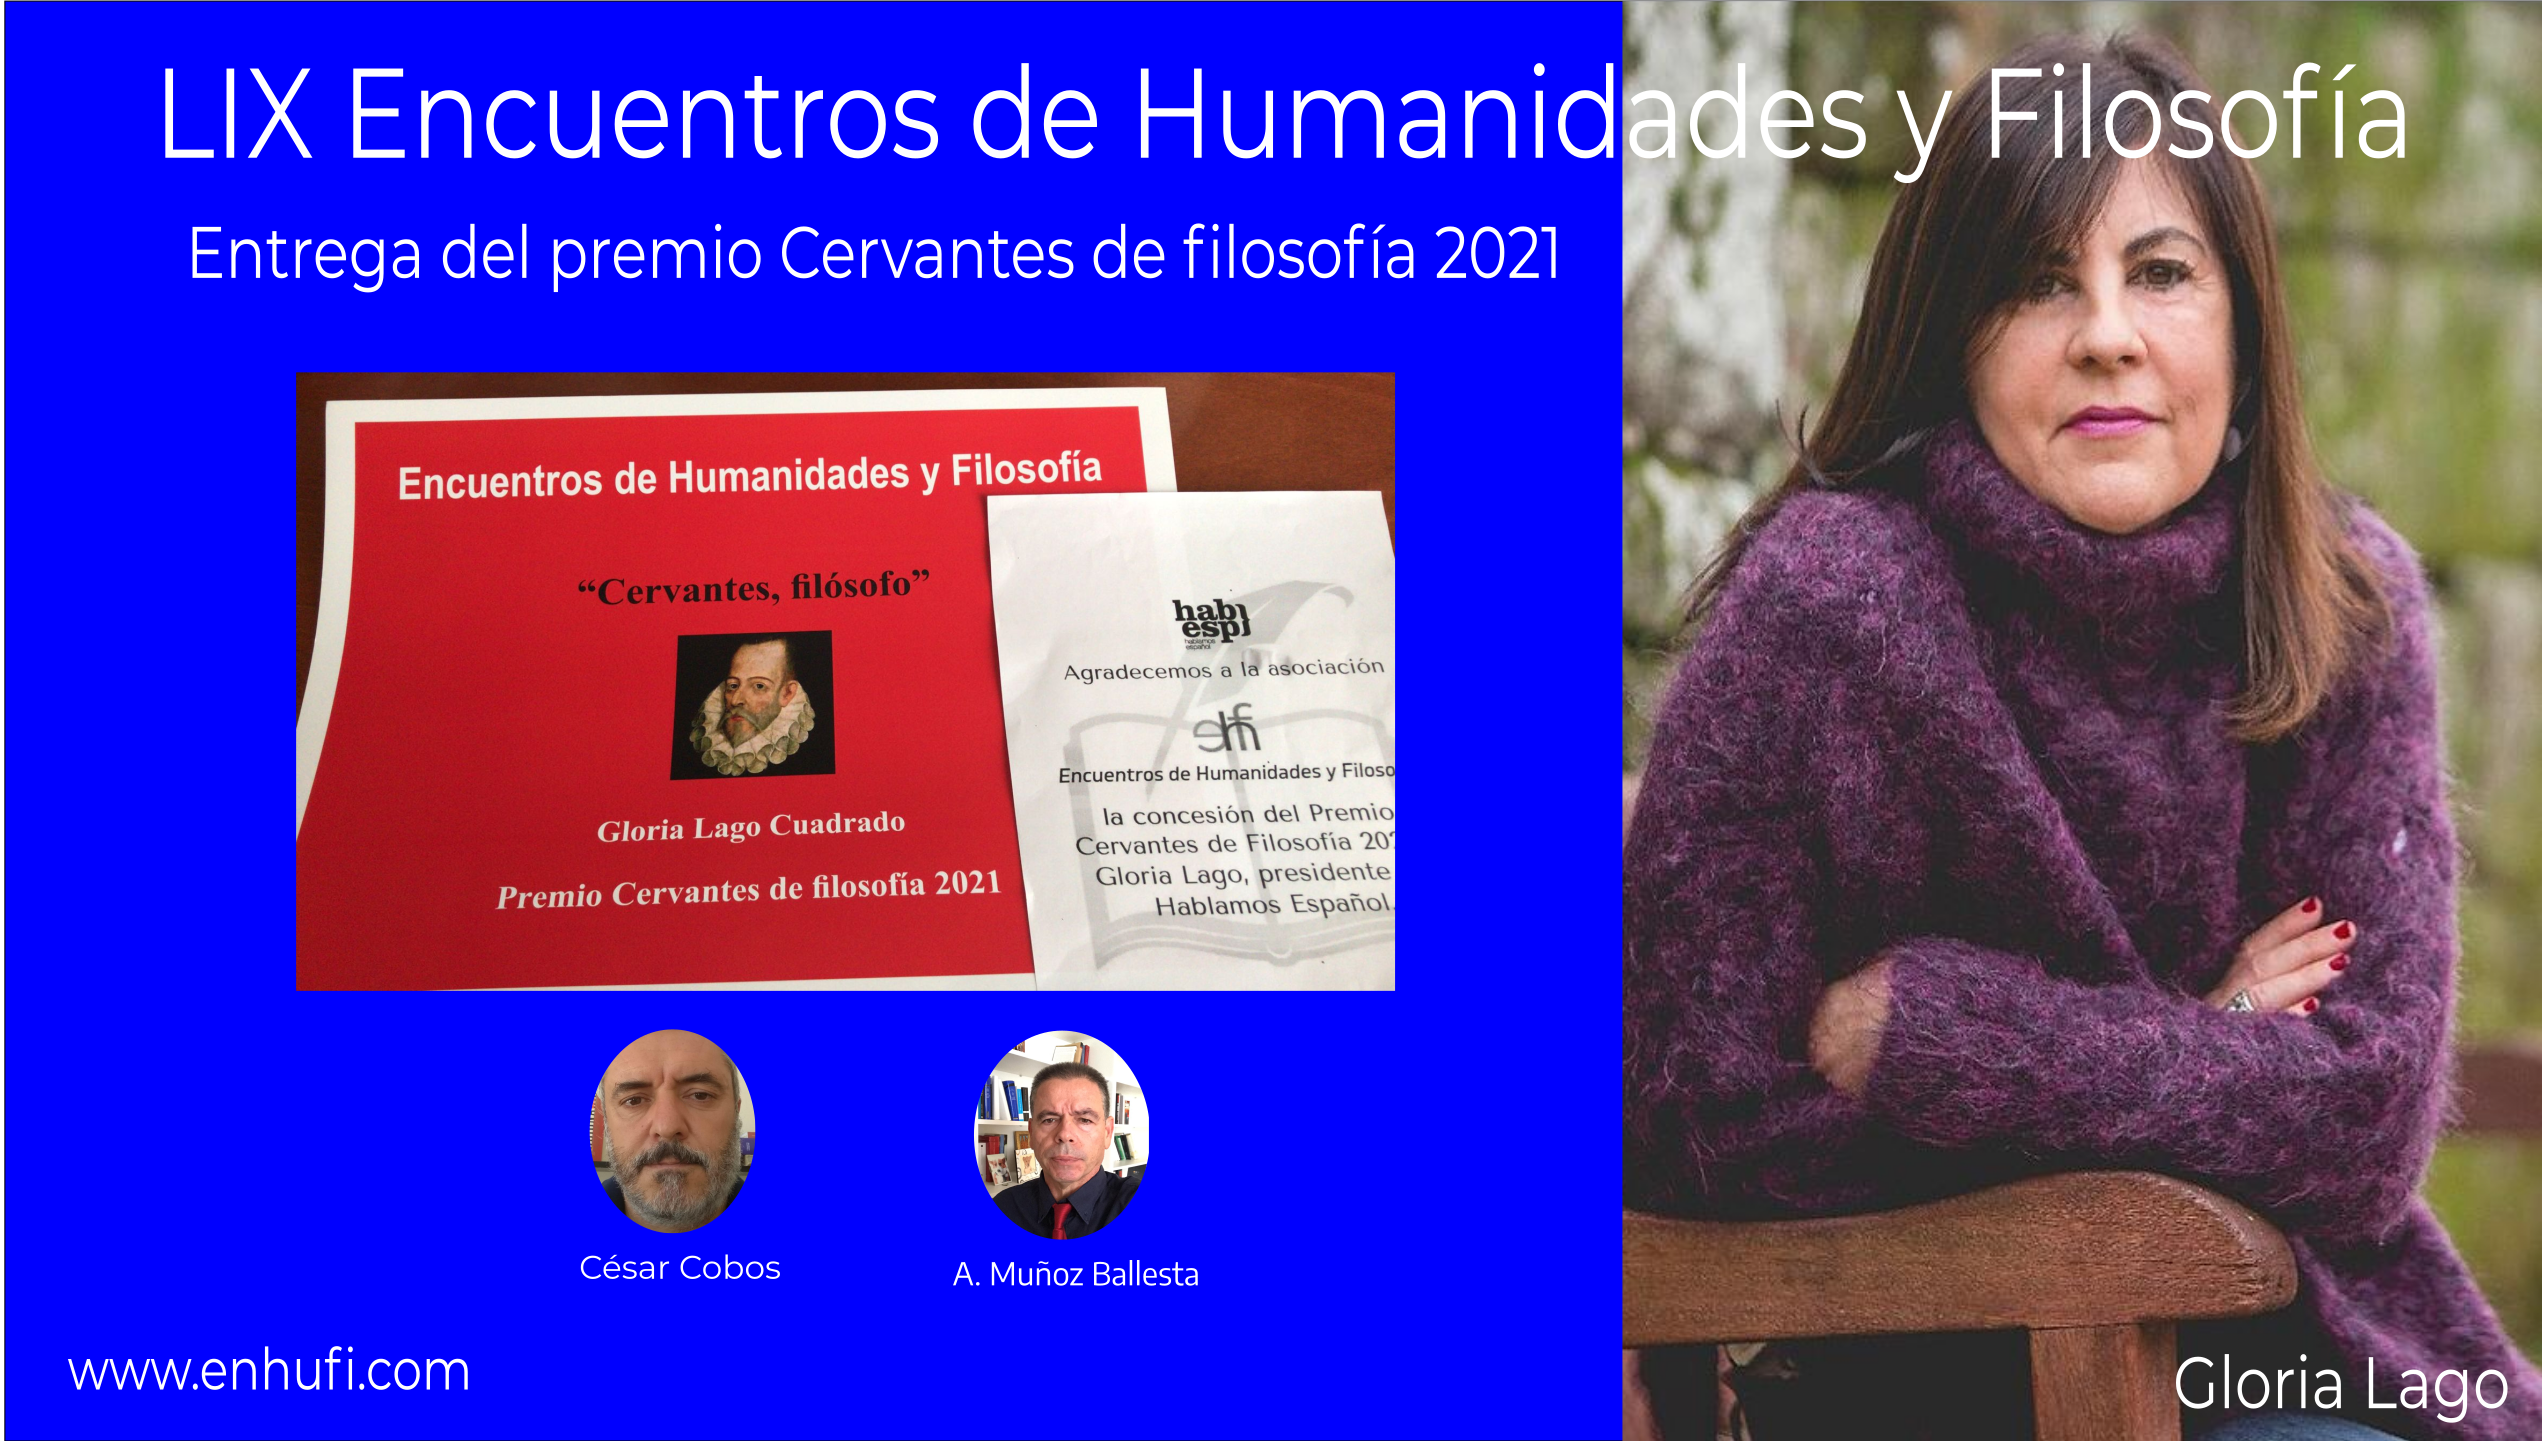 LVIII Encuentros de Humanidades y Filosofía:  entrega del premio Cervantes de filosofía 2021 a Gloria Lago.